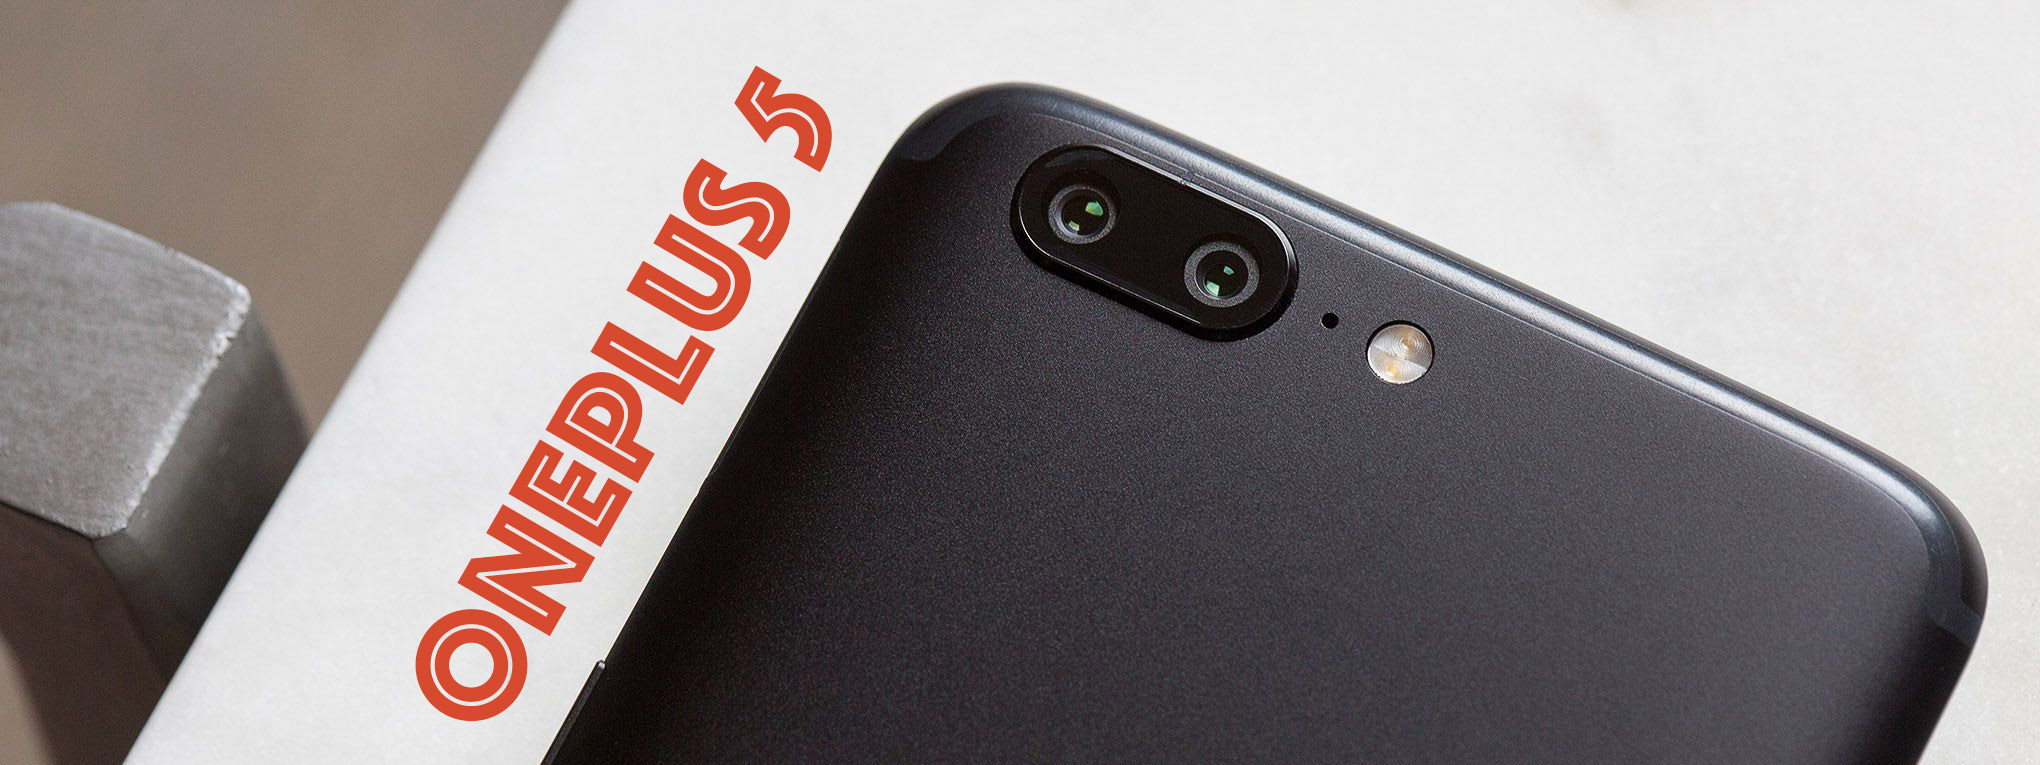 Câu chuyện OnePlus 5: sinh ra để chứng minh OnePlus có thể làm camera tốt